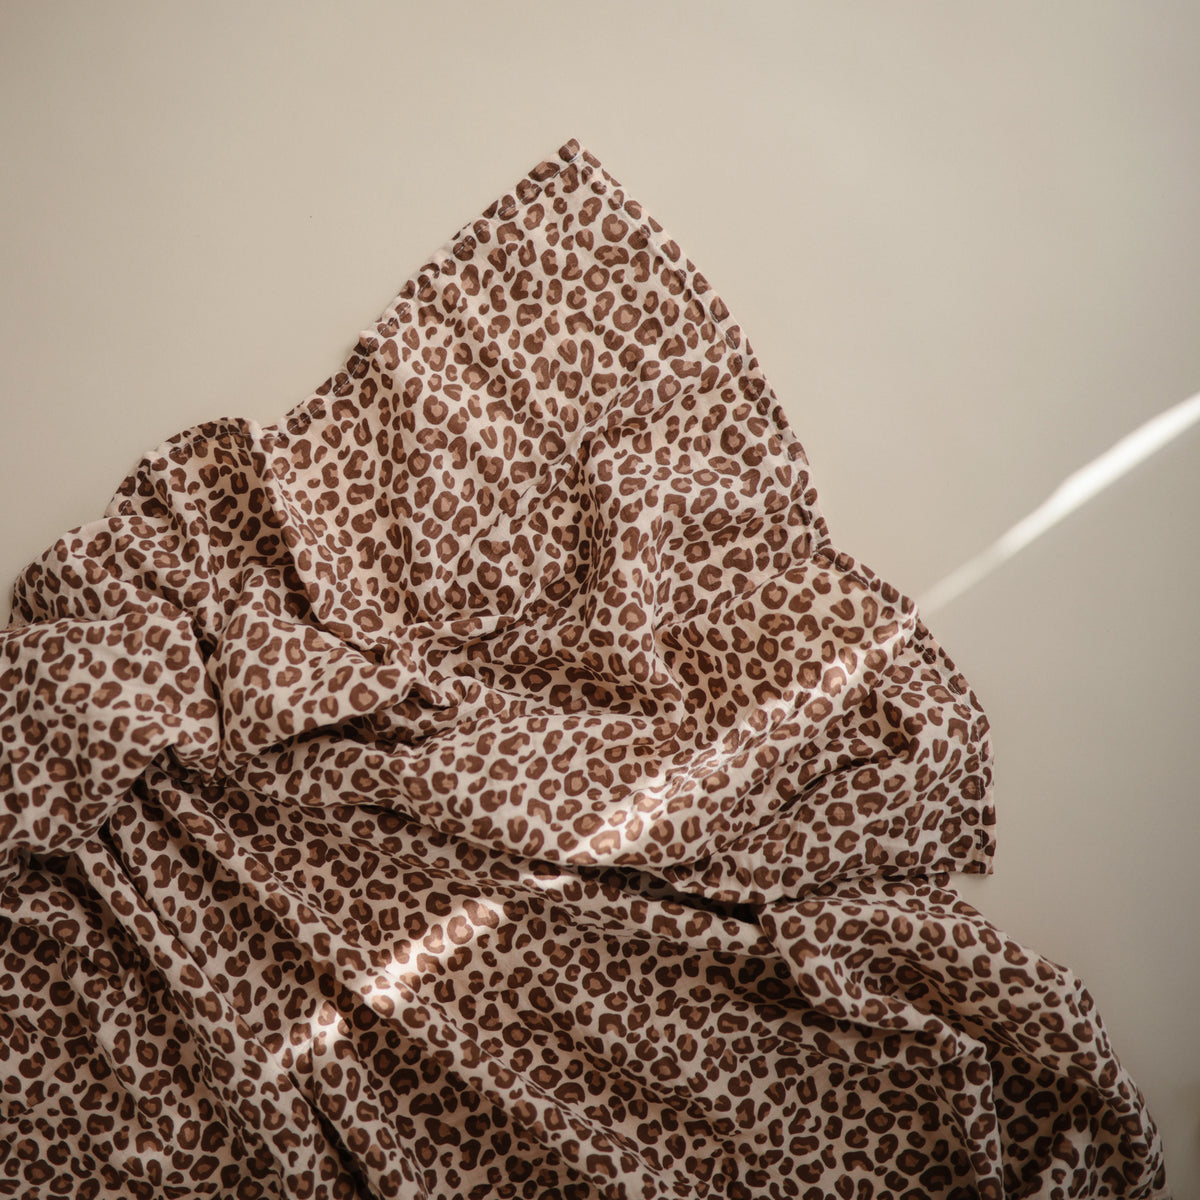 Muslin Swaddle Blanket Organic Cotton - Leopard